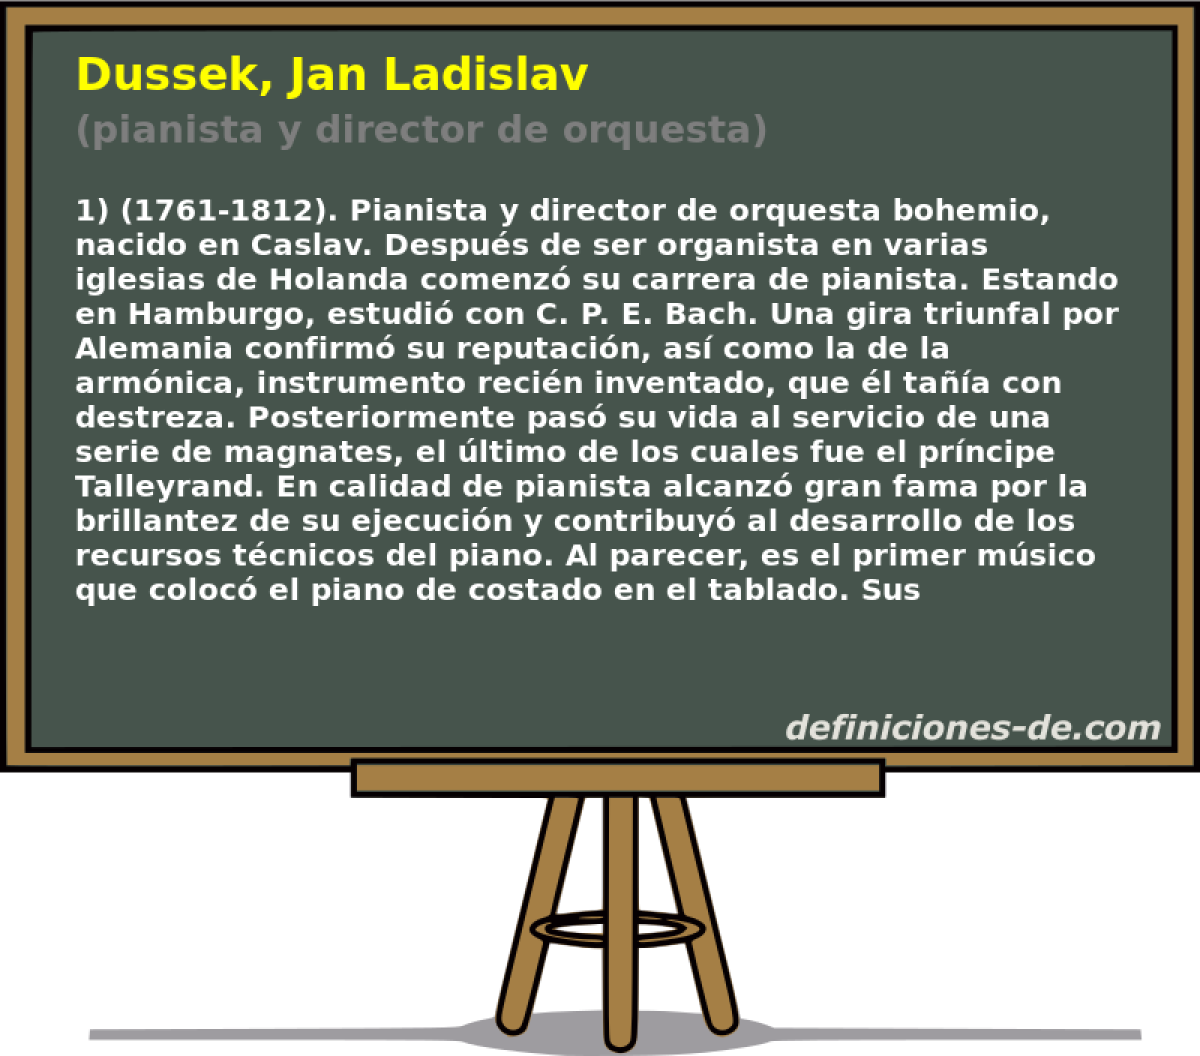 Dussek, Jan Ladislav (pianista y director de orquesta)